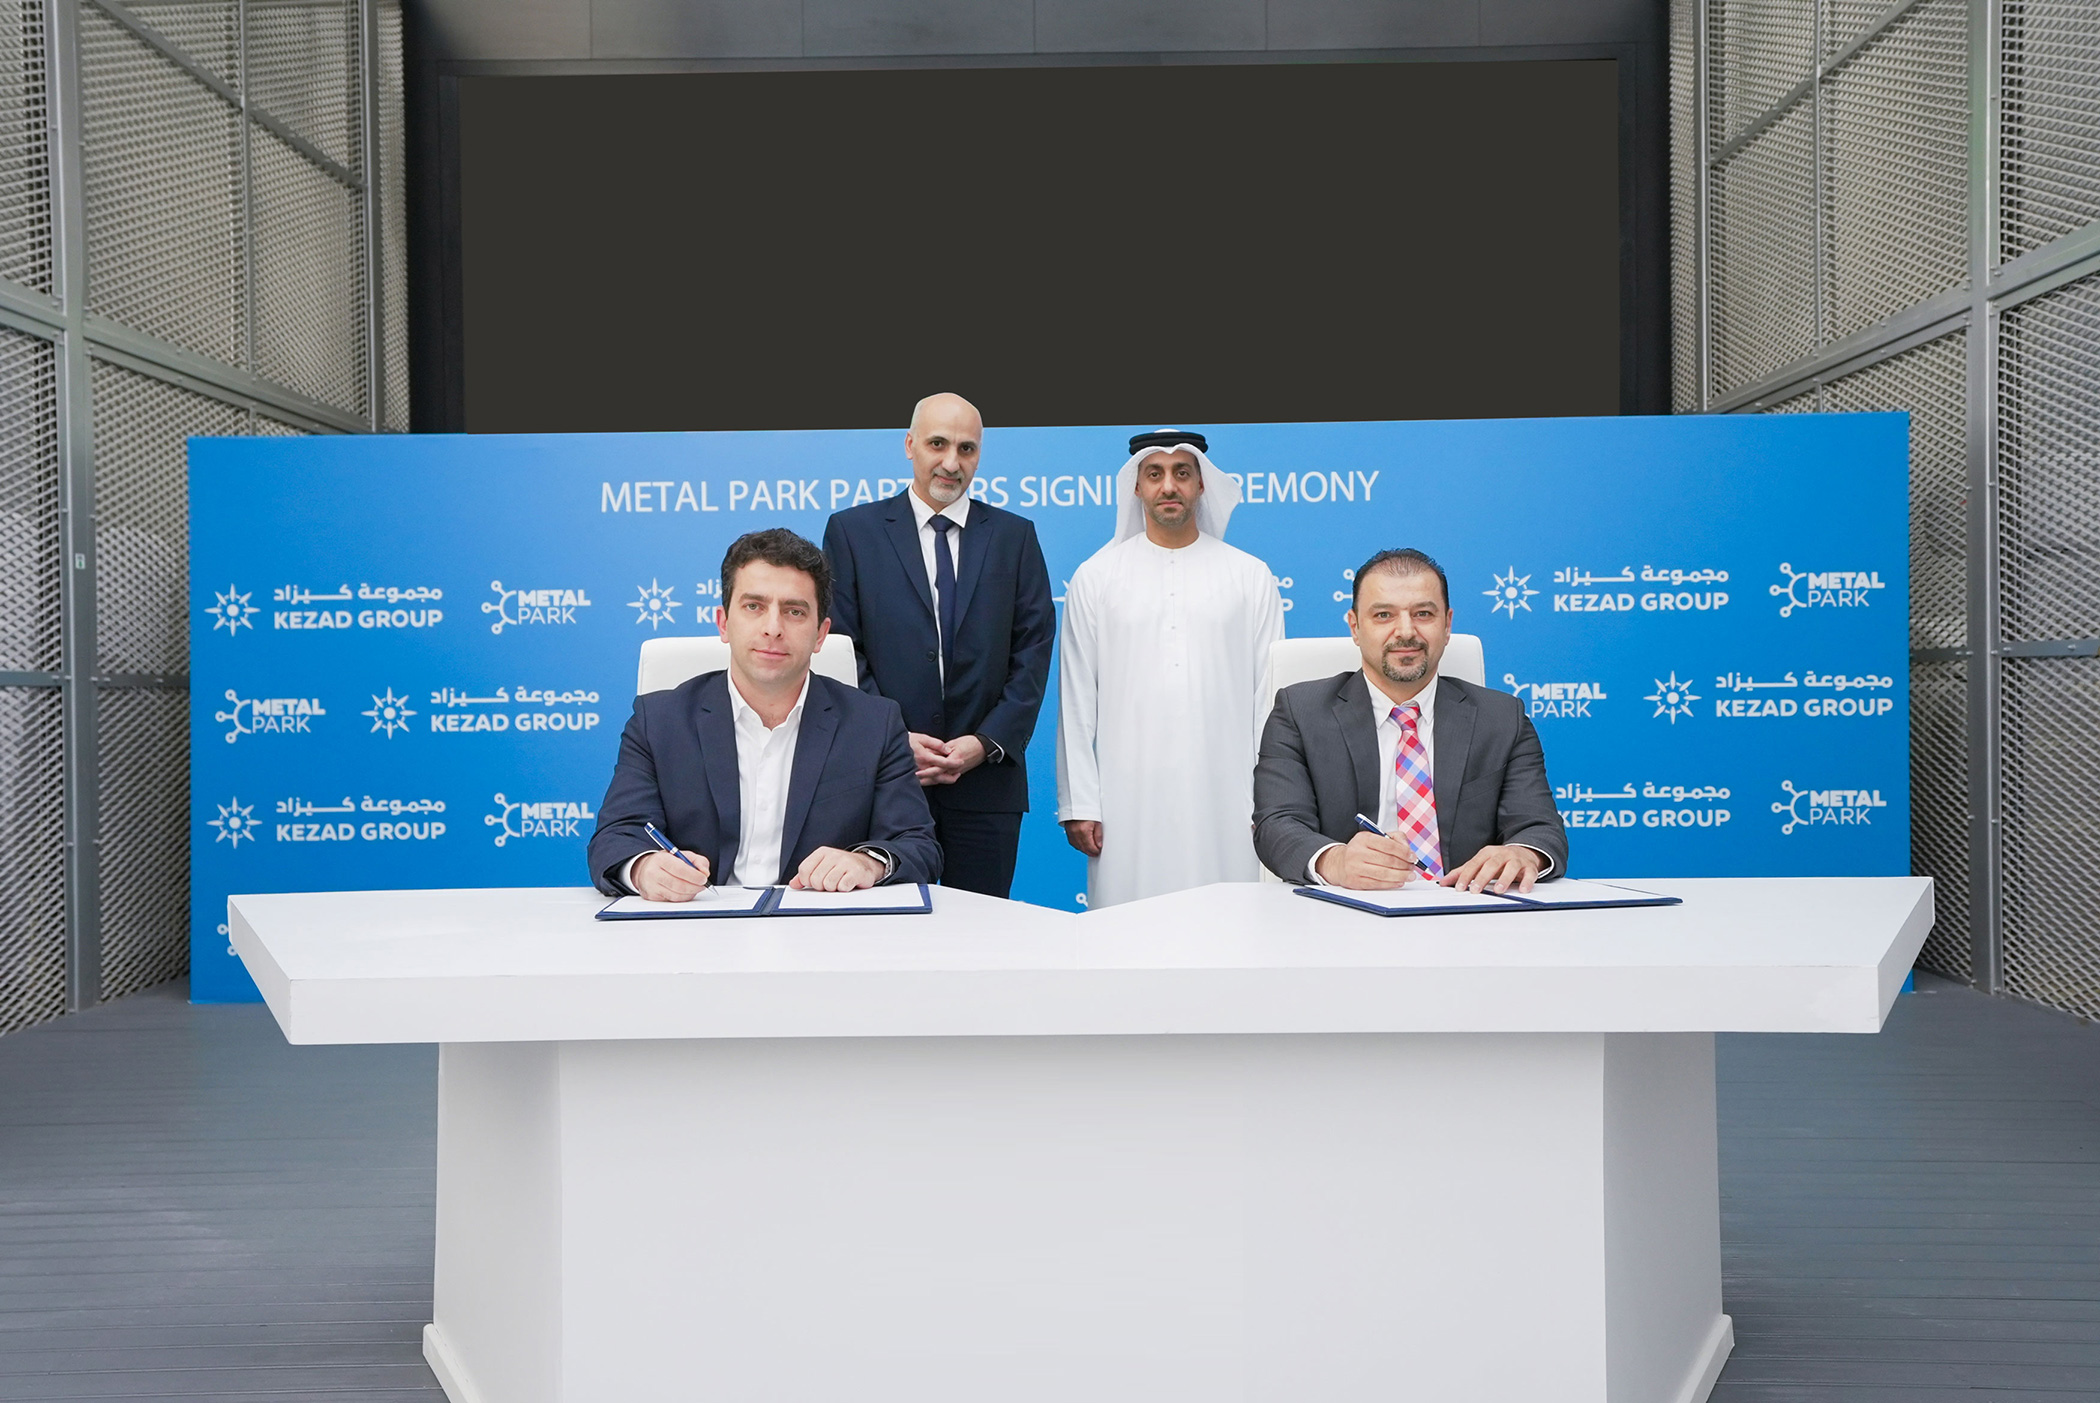 شراكة بين "ميتال بارك" و "غلفا هب" لإنشاء أكبر حوض جلفنة على مستوى الإمارات في كيزاد